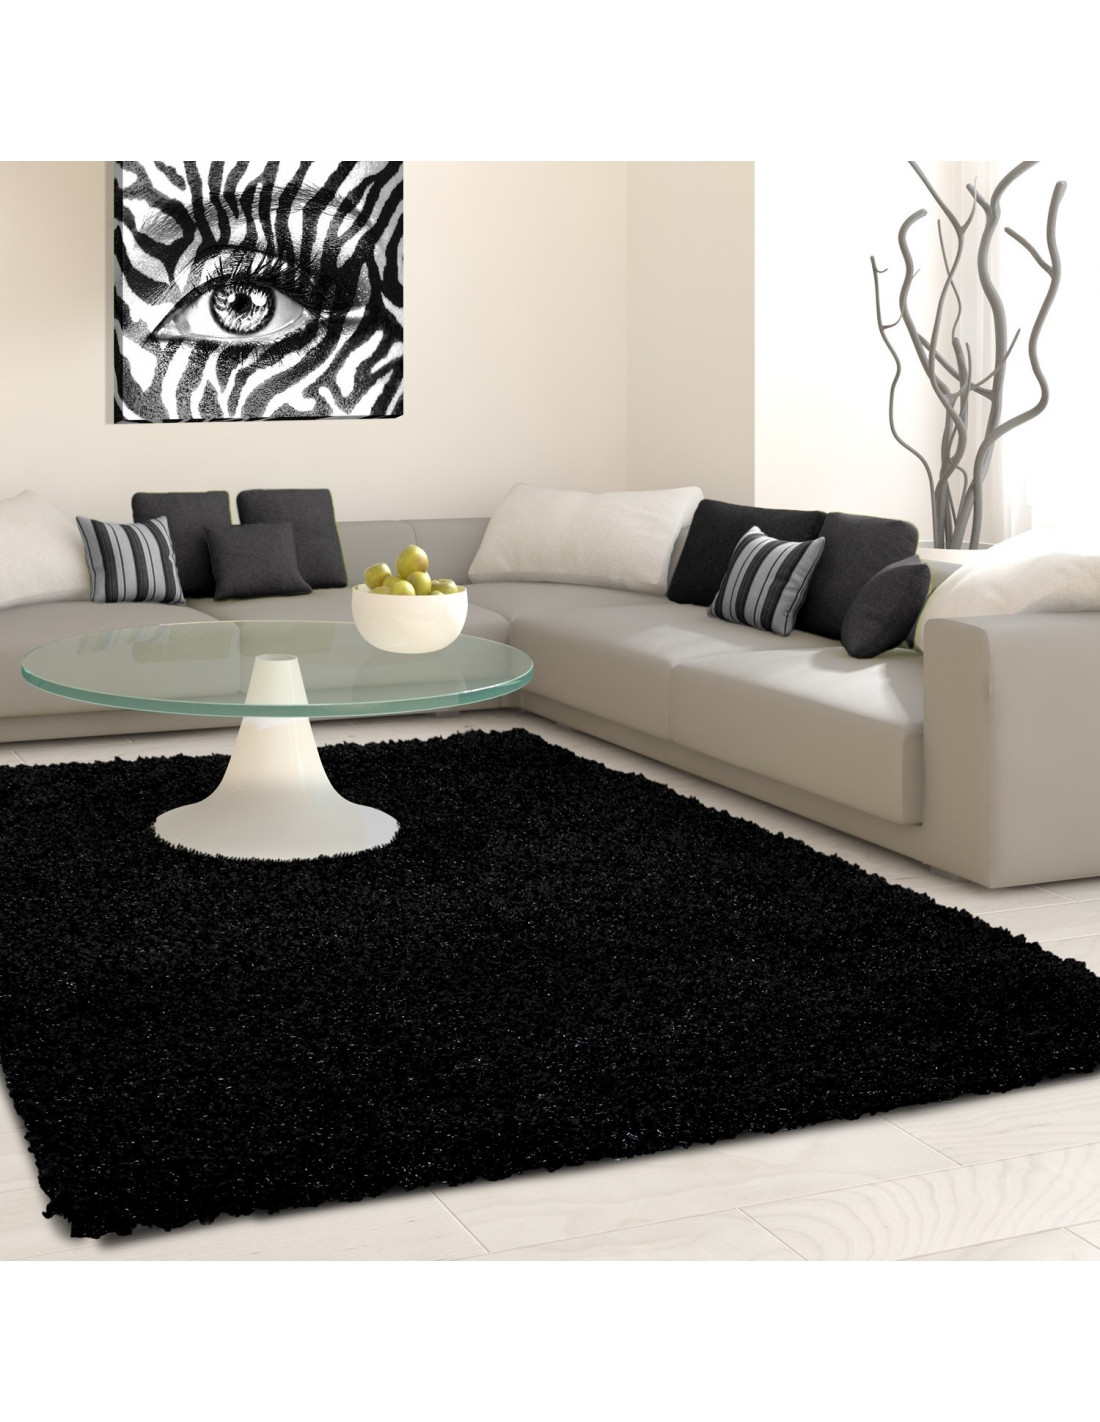 Hoogpolig tapijt, hoogpolig, langpolig, woonkamer hoogpolig, poolhoogte 3 cm, eenkleurig antraciet